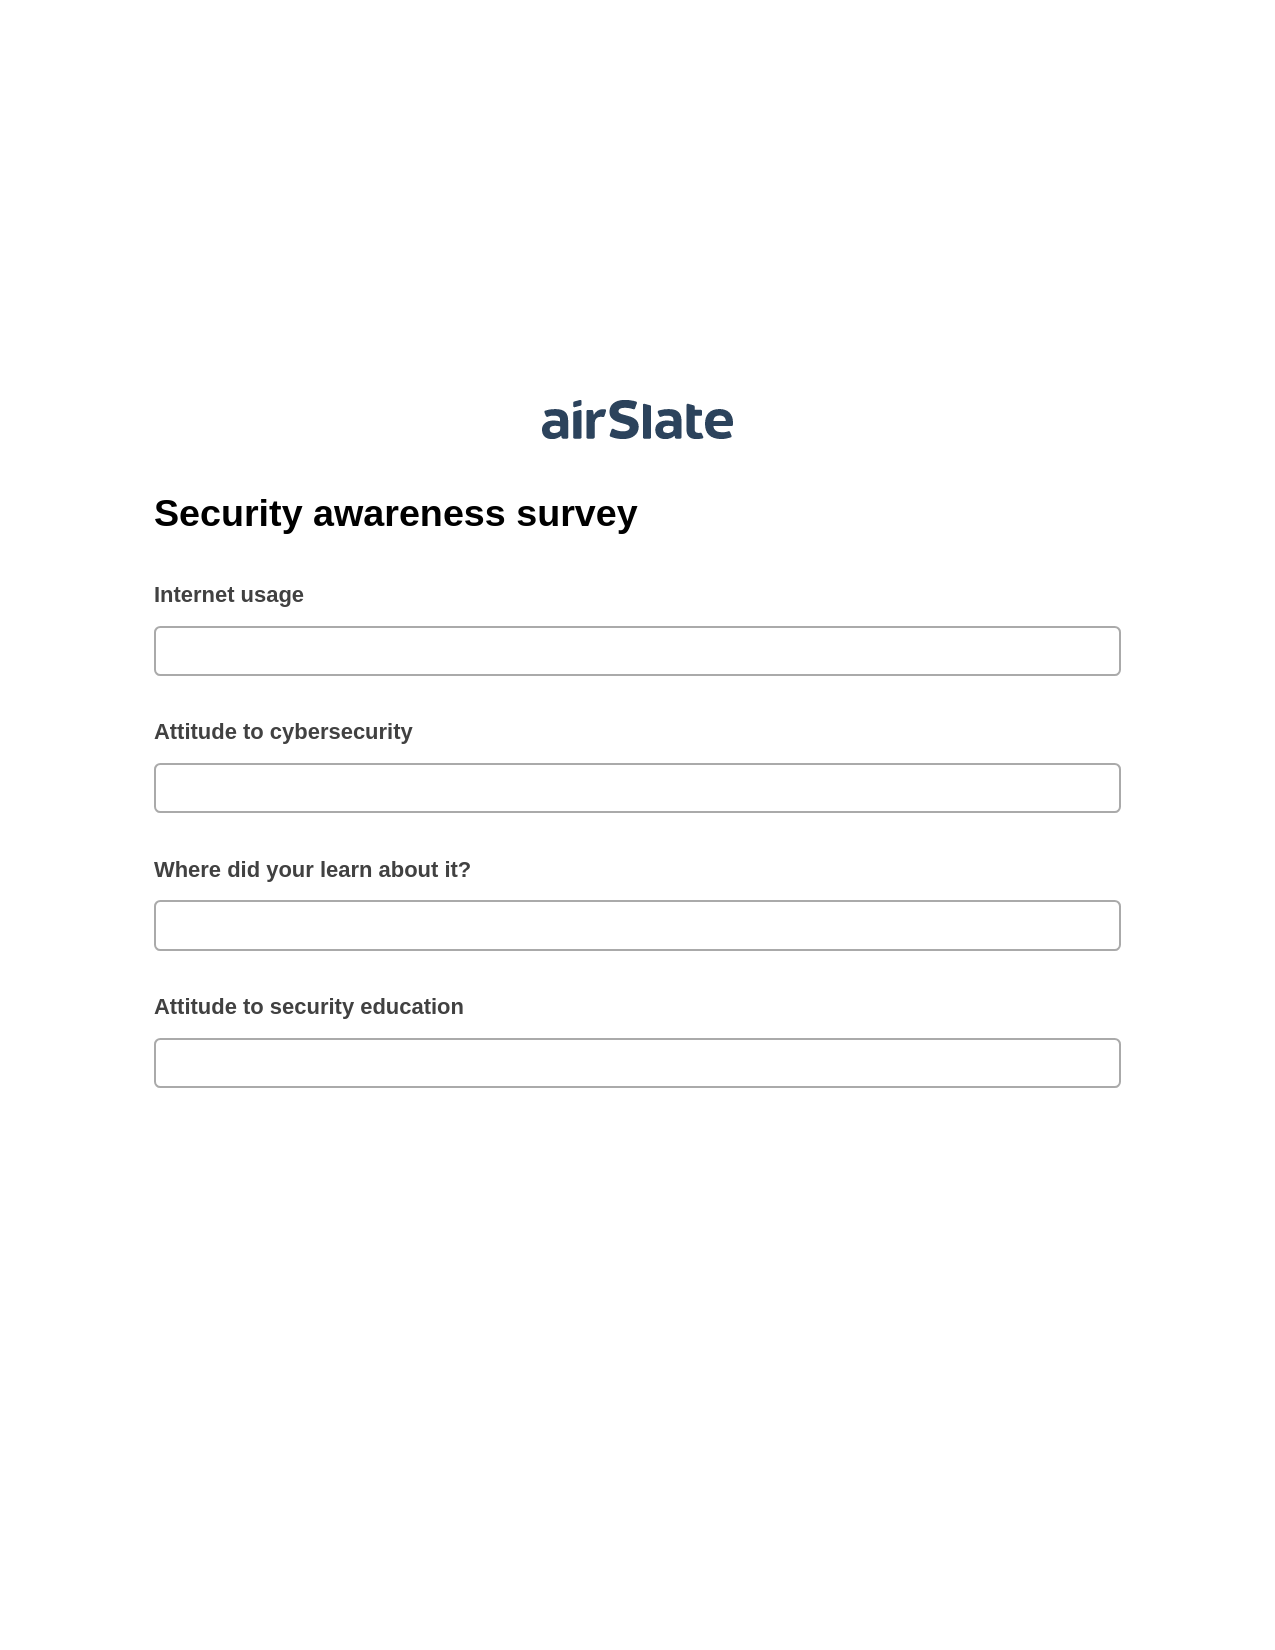 Multirole Security awareness survey Pre-fill Document Bot, Google Calendar Bot, Dropbox Bot